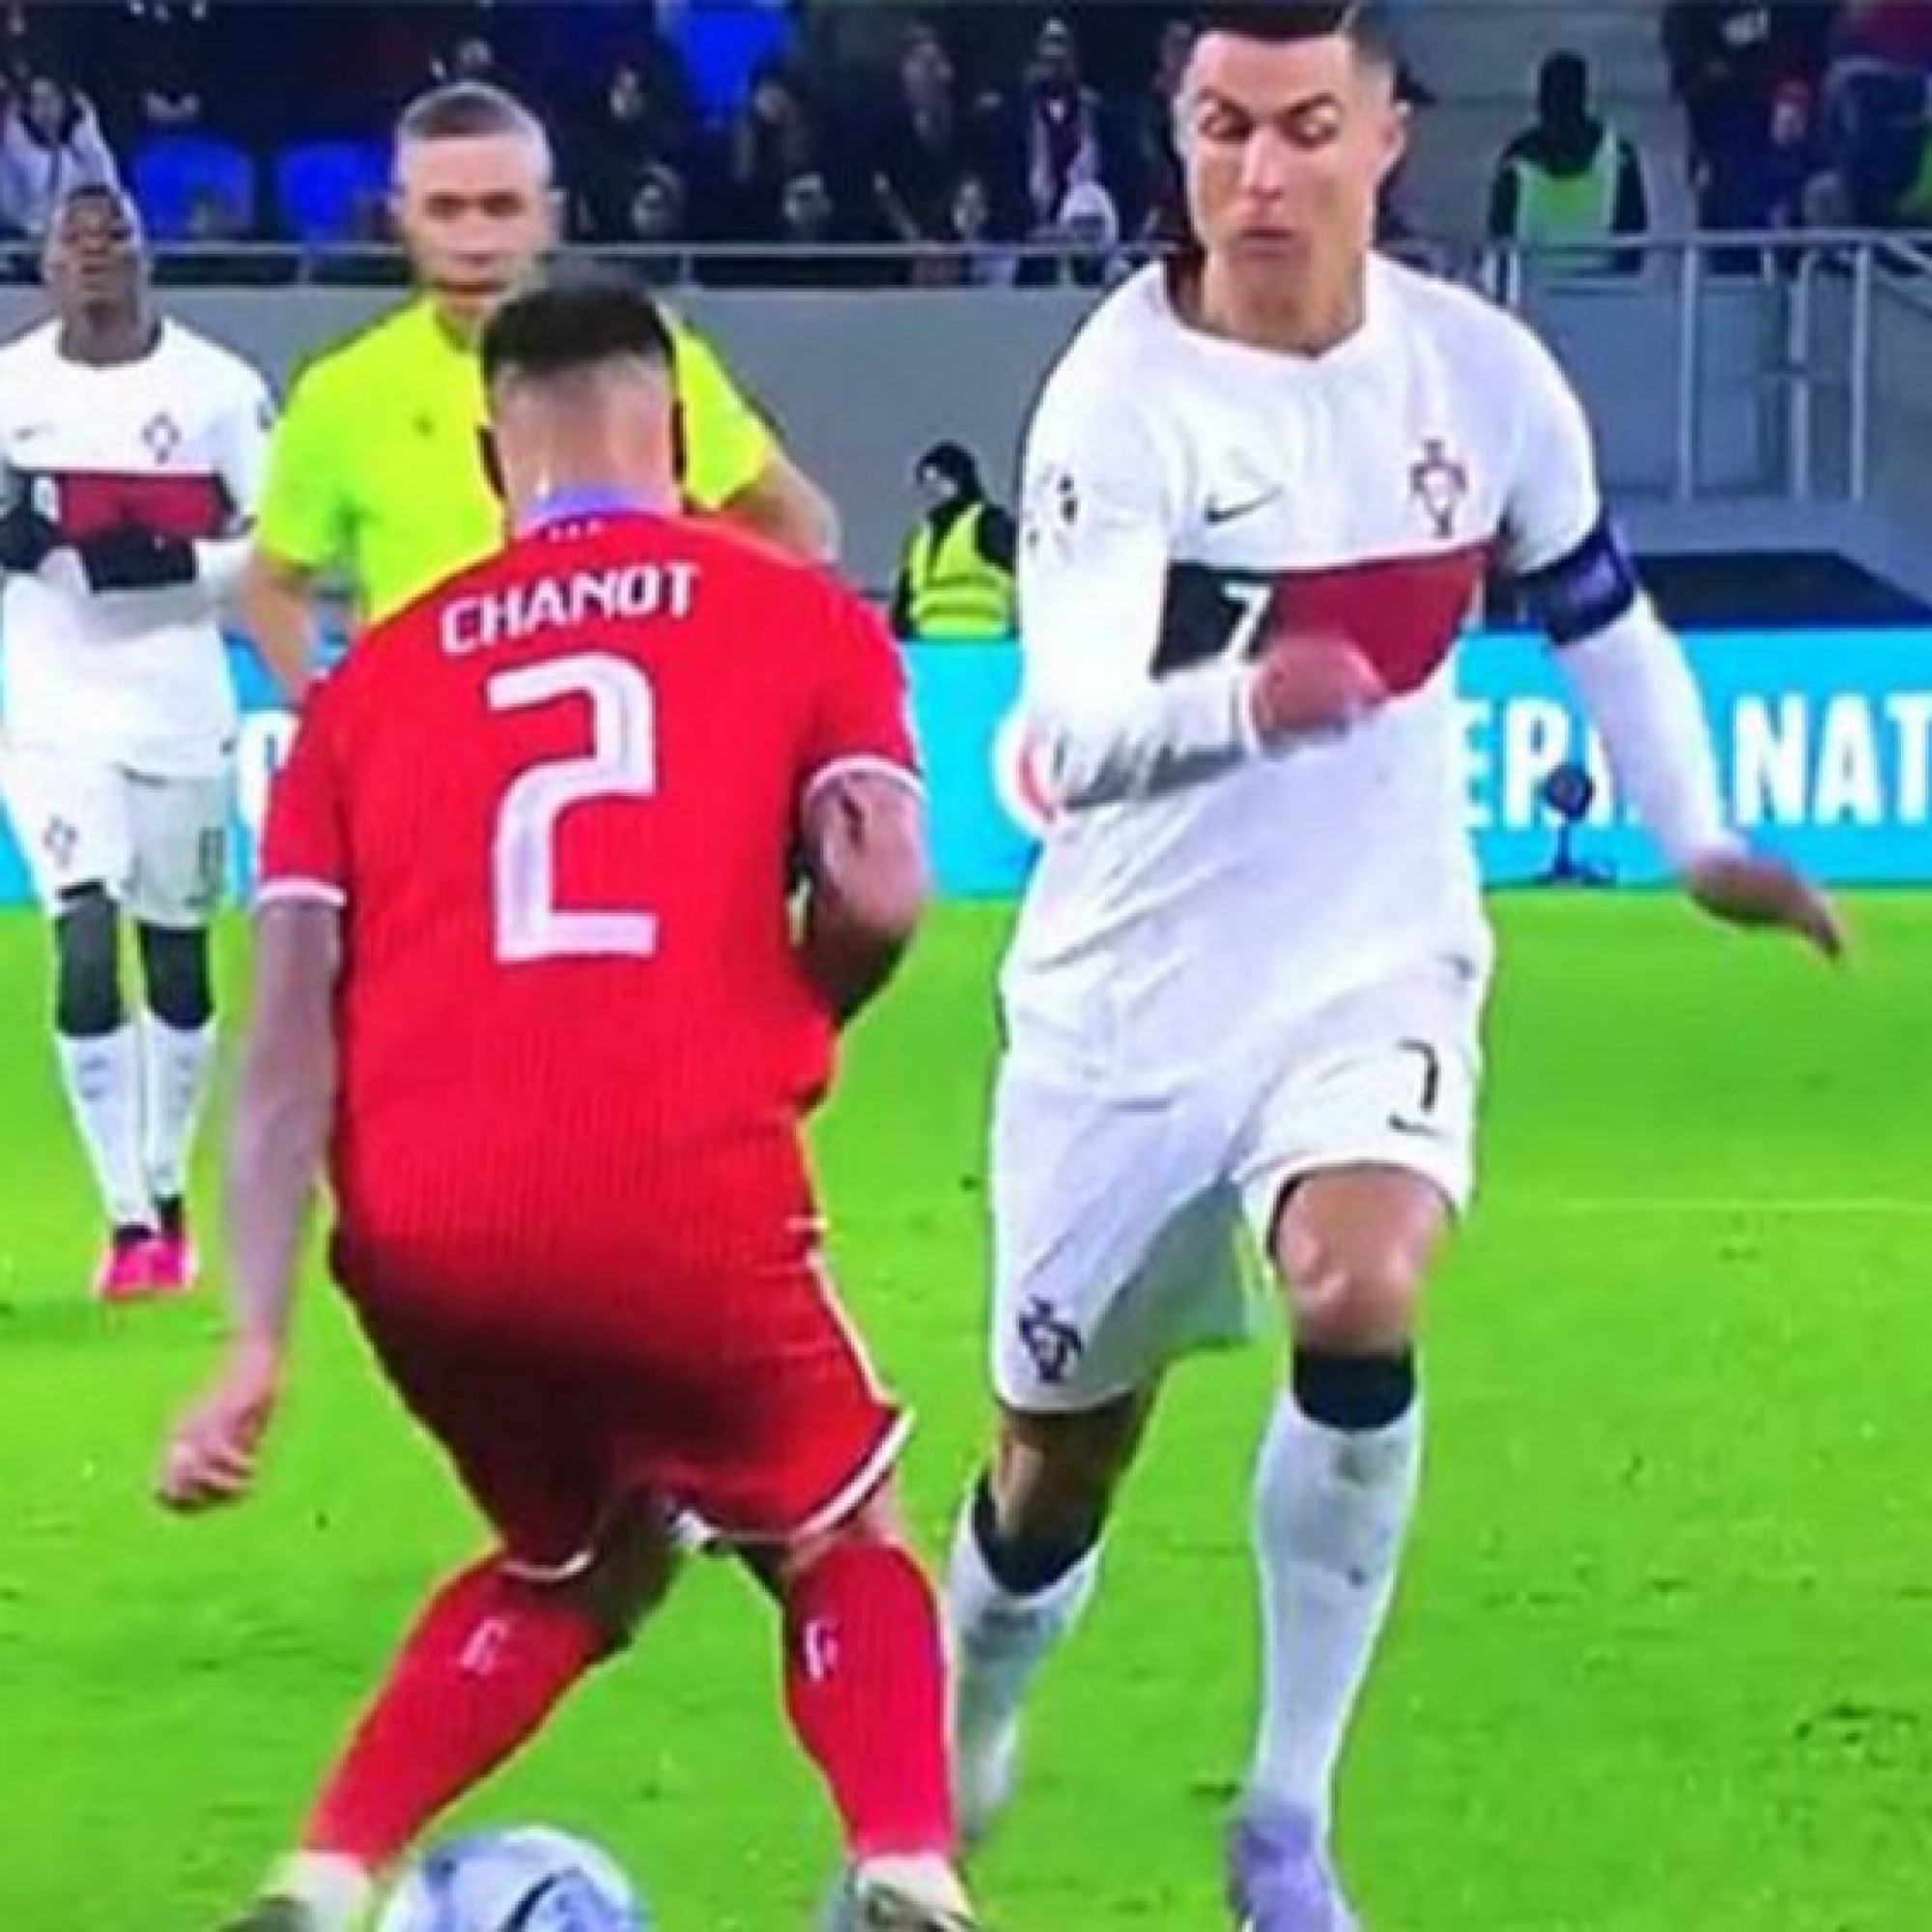  - Ronaldo bất chấp để ghi hat-trick: Giở trò bị trọng tài phạt thẻ vàng